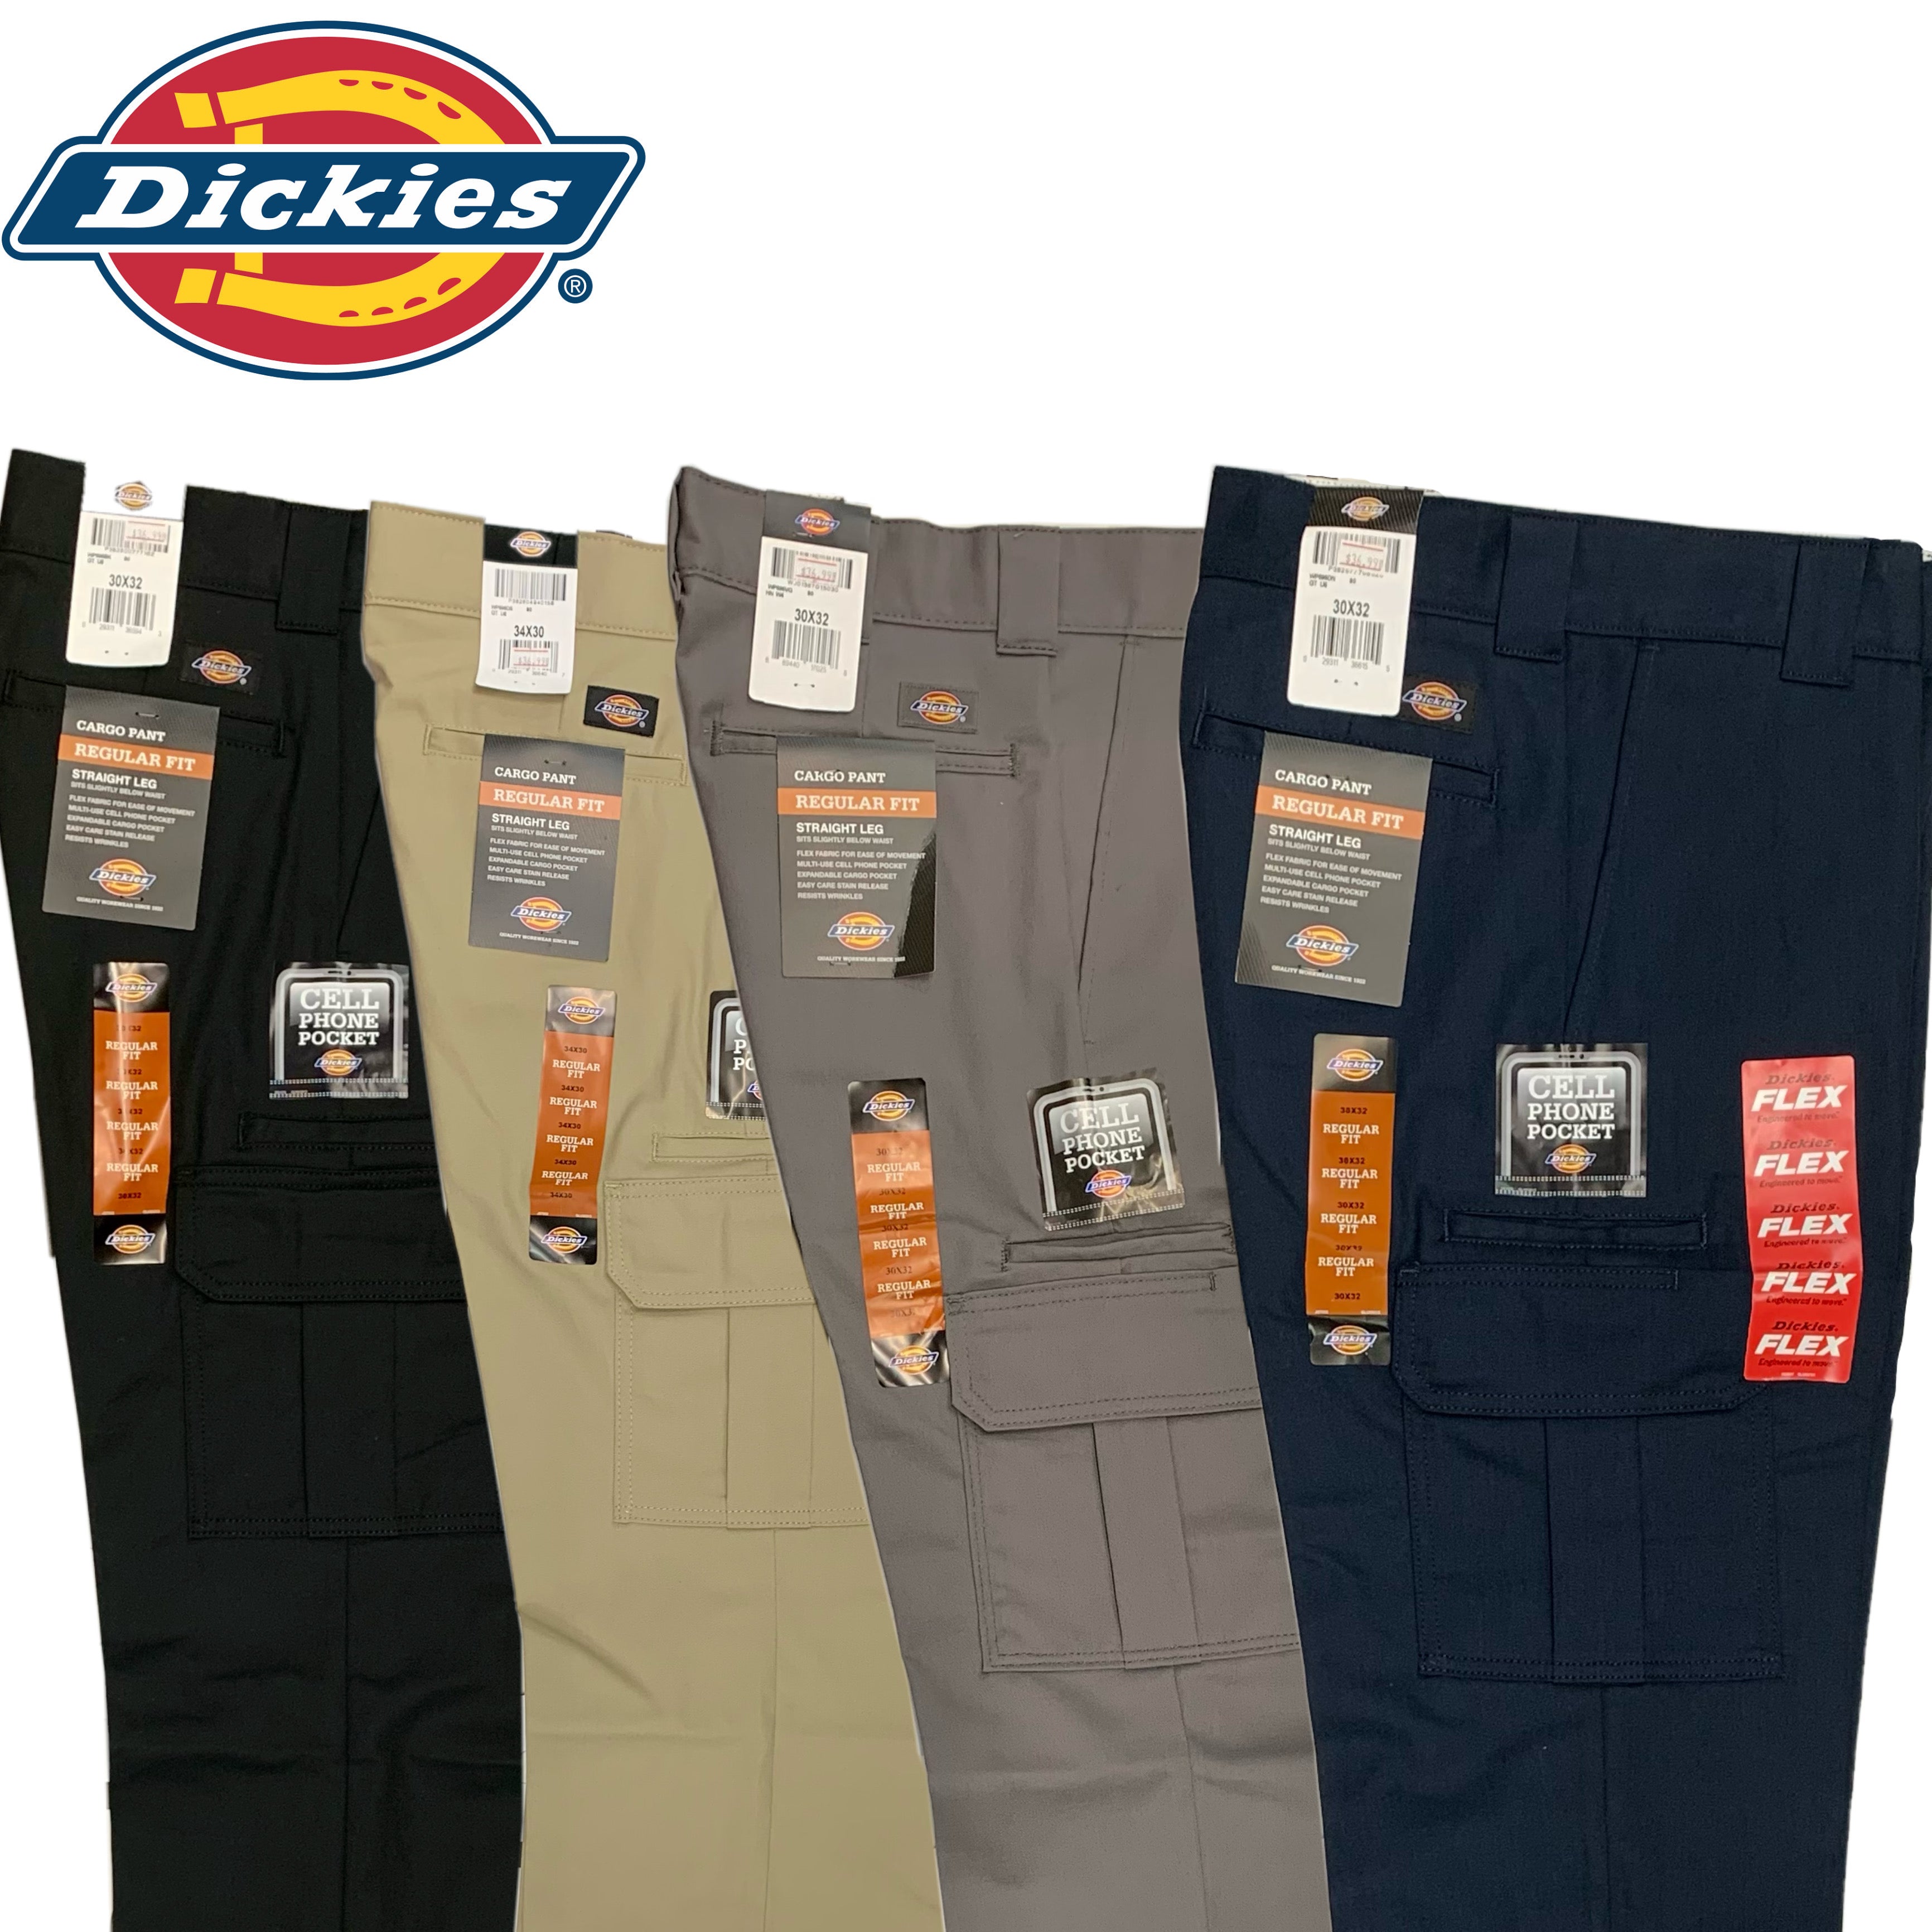 Dickies Cargo Pants